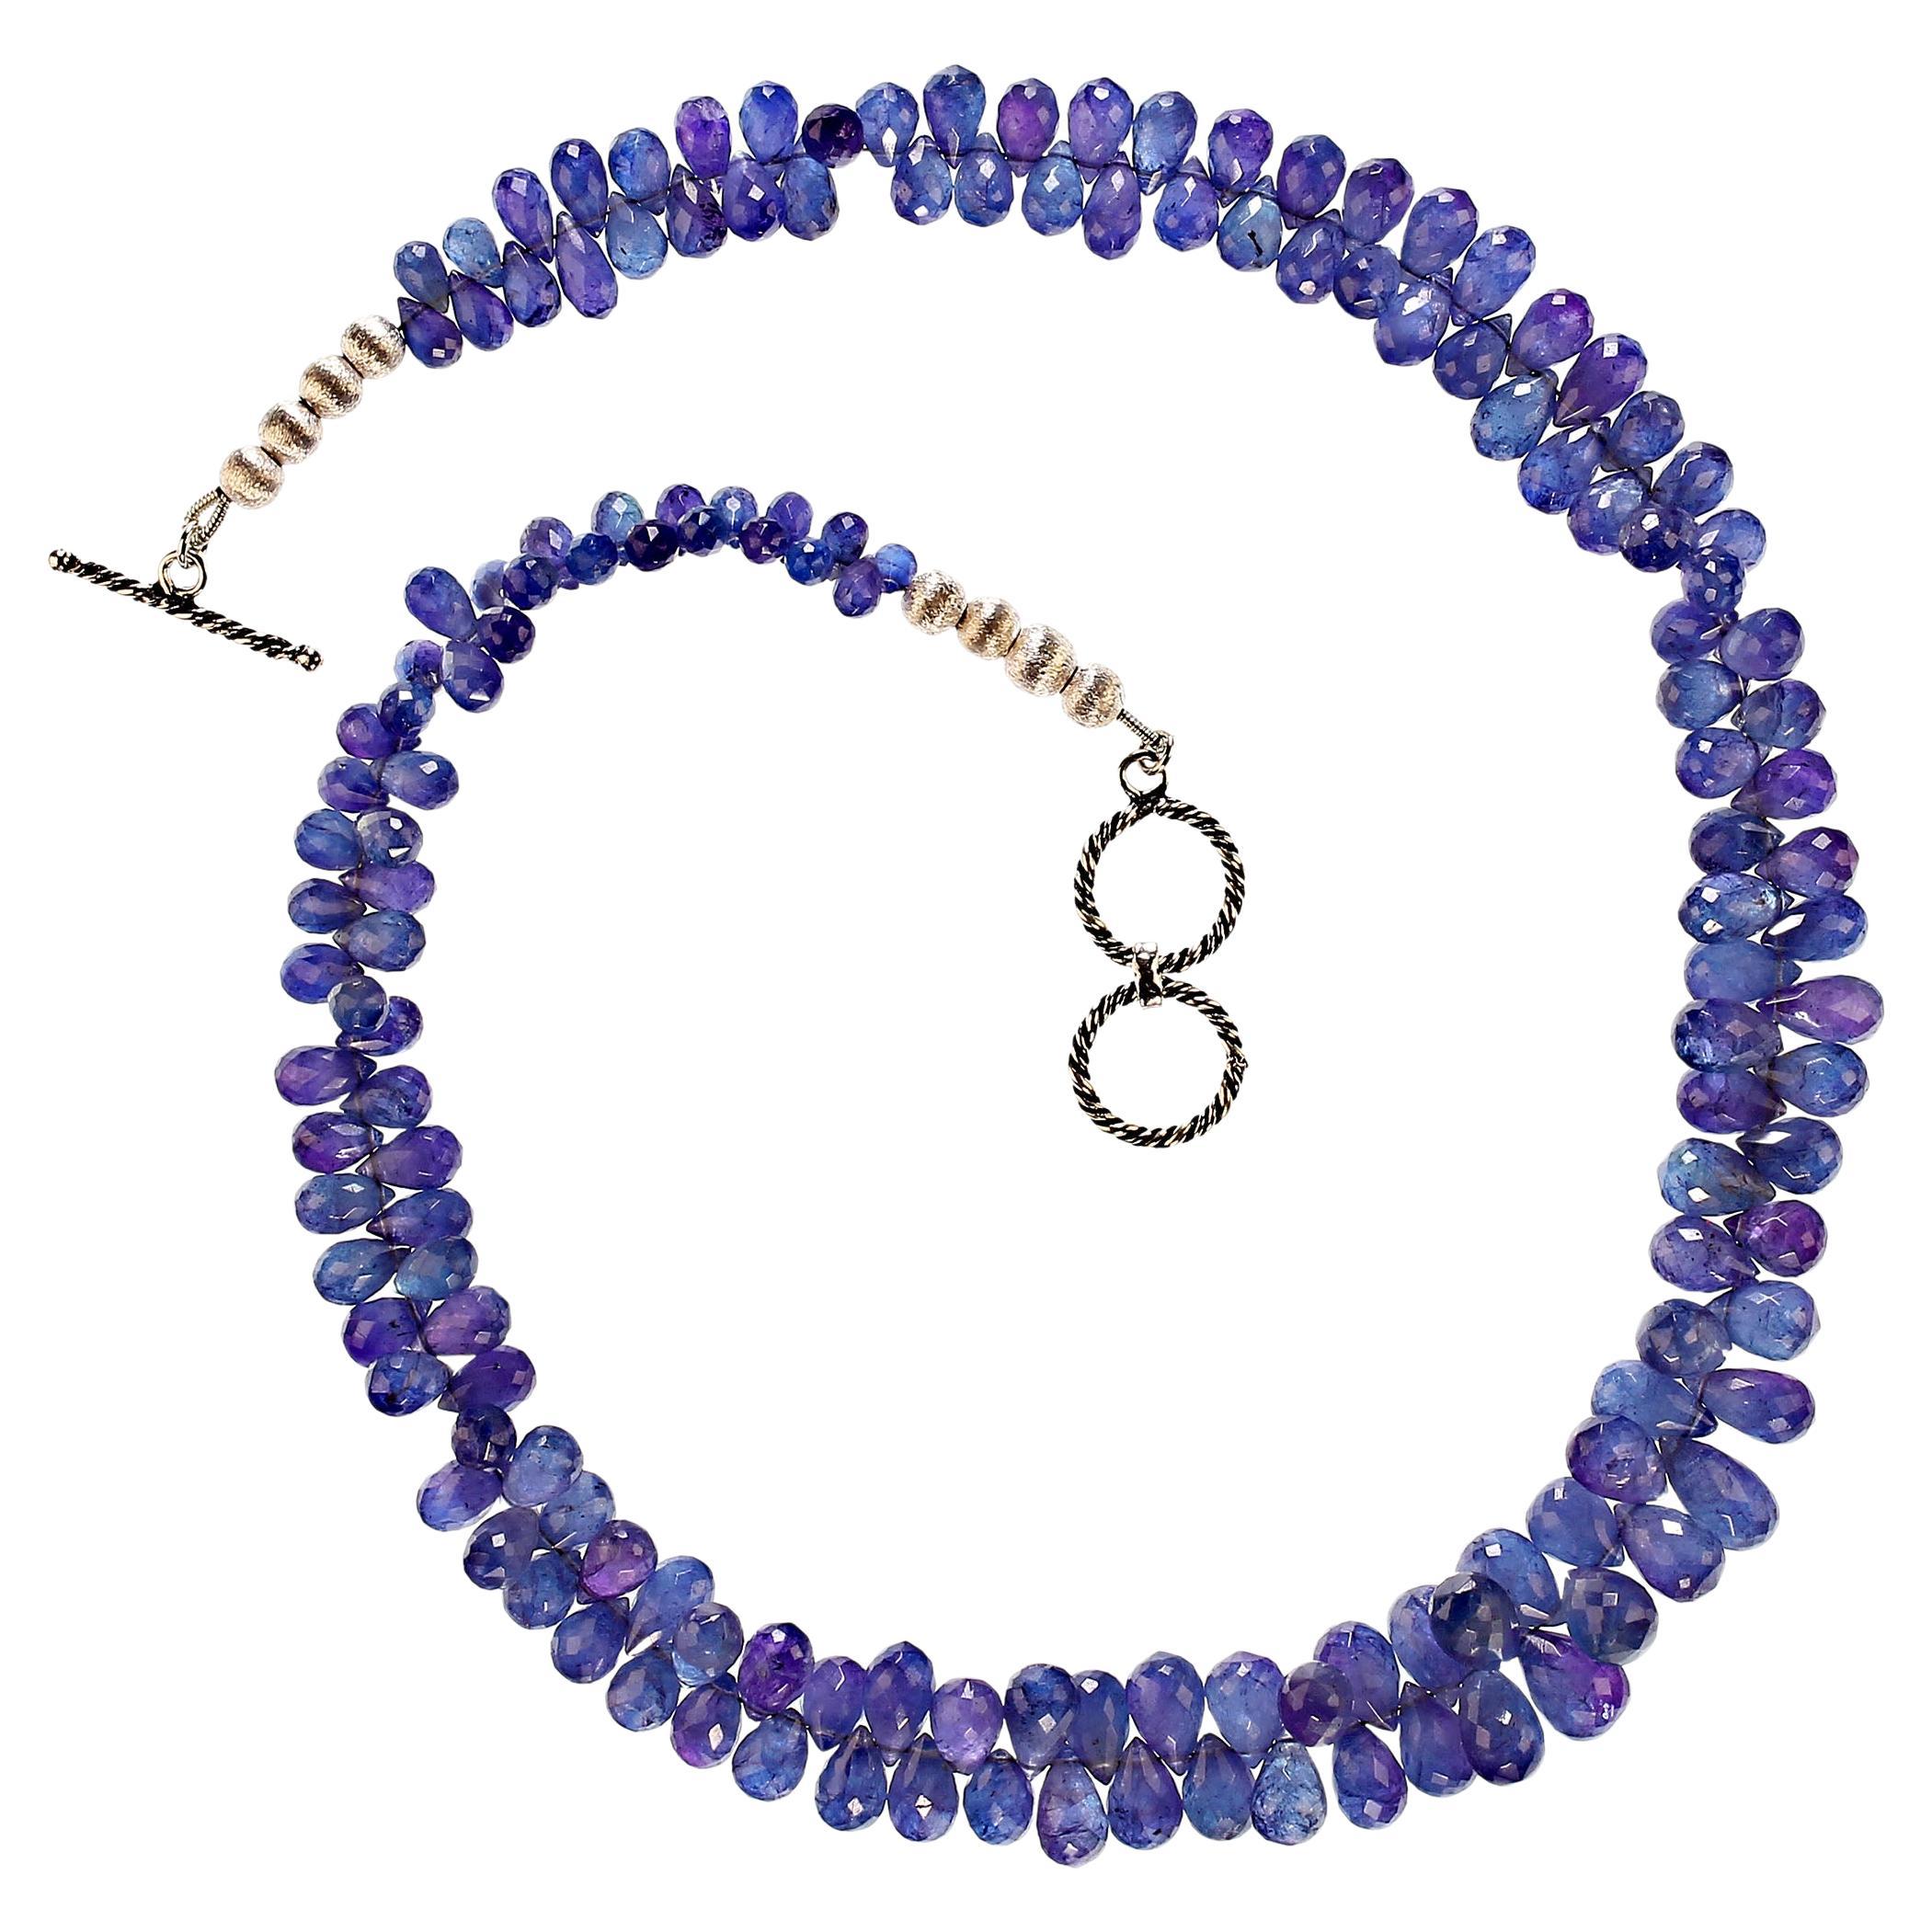 Abgestufte Tansanit-Halskette, AJD 19 Zoll, durchscheinende blau-lila Briolettes, Tansanit im Angebot